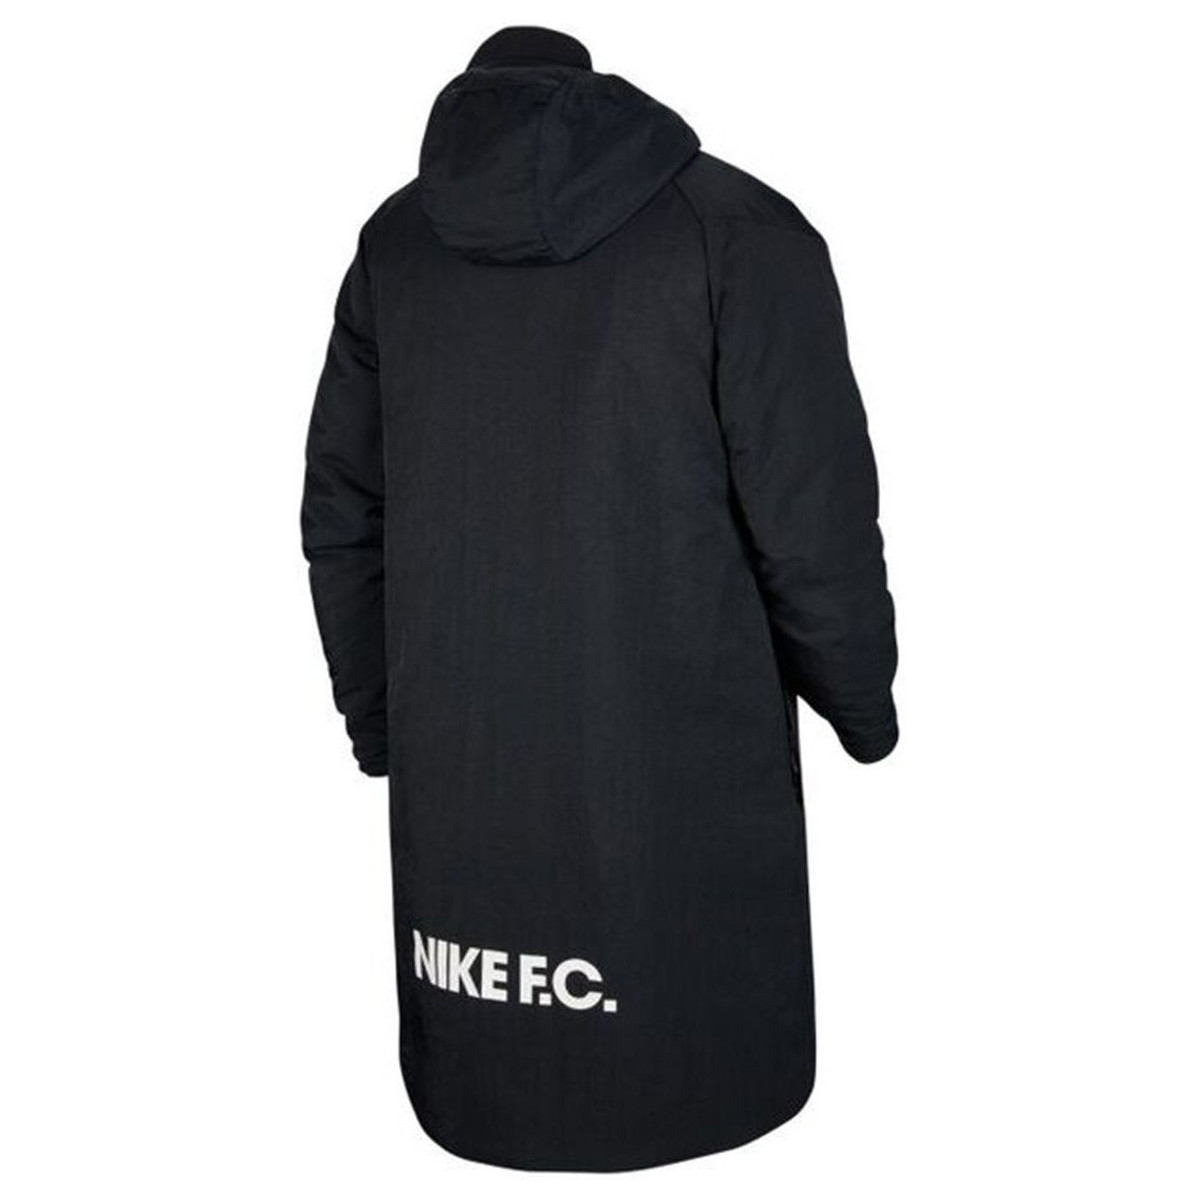 Nike Noir F.C SIDELINE 9FXuaU0w